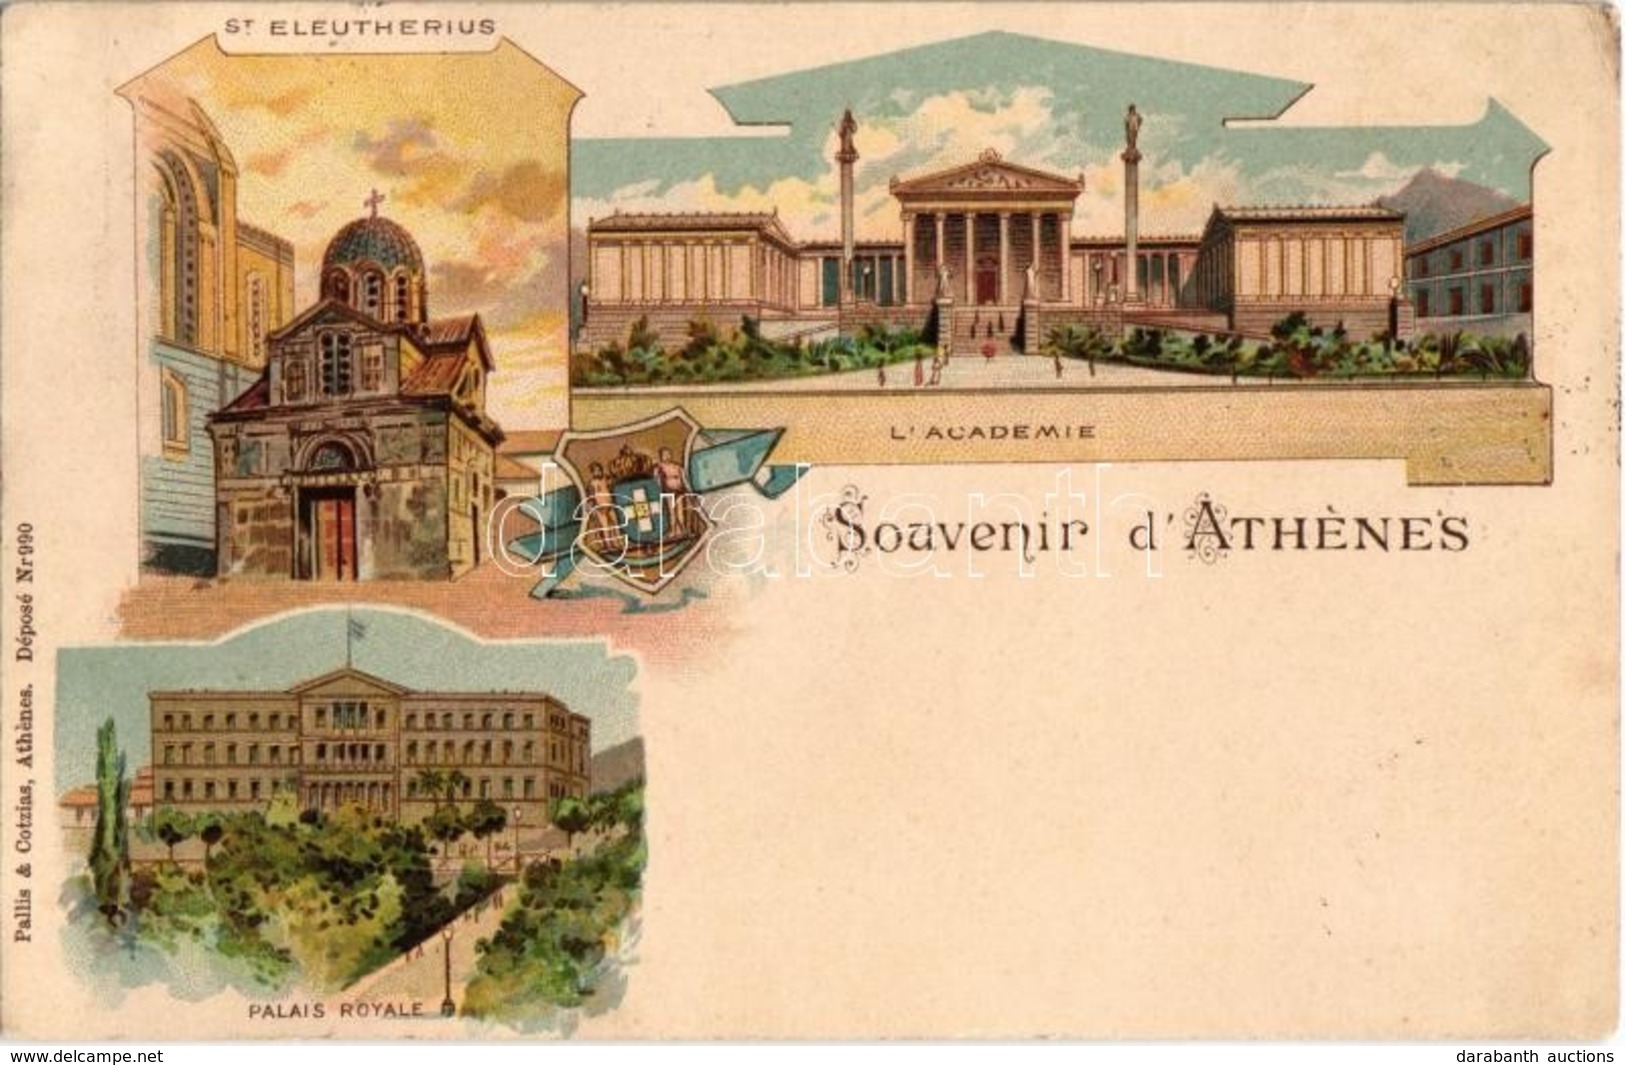 T2/T3 1899 (Vorläufer!) Athens, Athénes; St. Eleutherius, Palais Royale, L'Academie. Pallis & Cotzias Litho  (EK) - Ohne Zuordnung